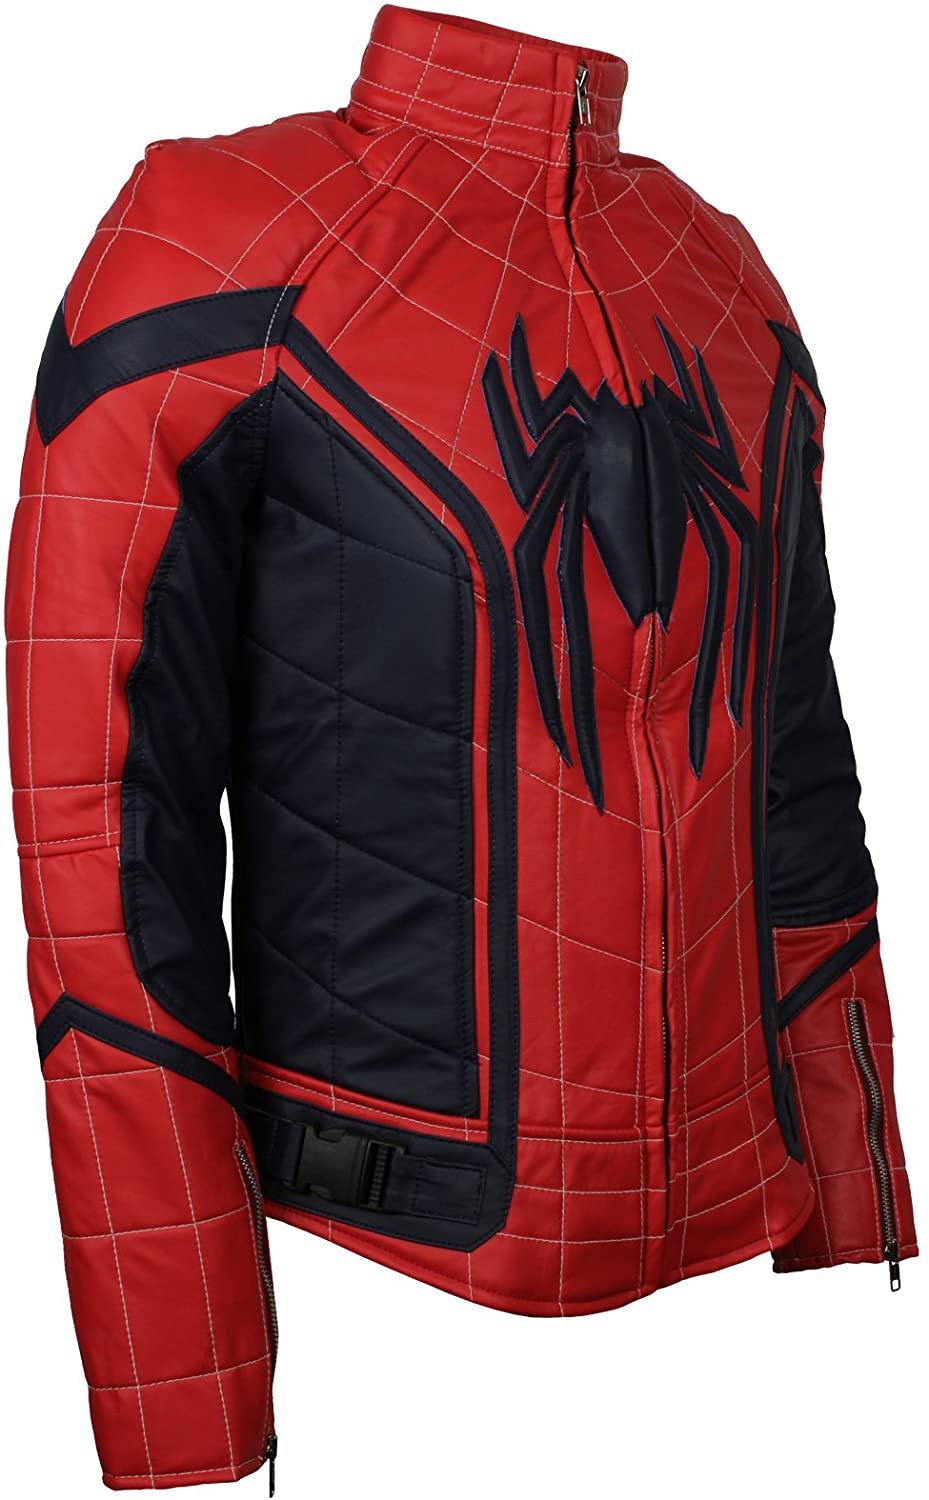 the-amazing-spiderman-leather-jacket-superjackets-1